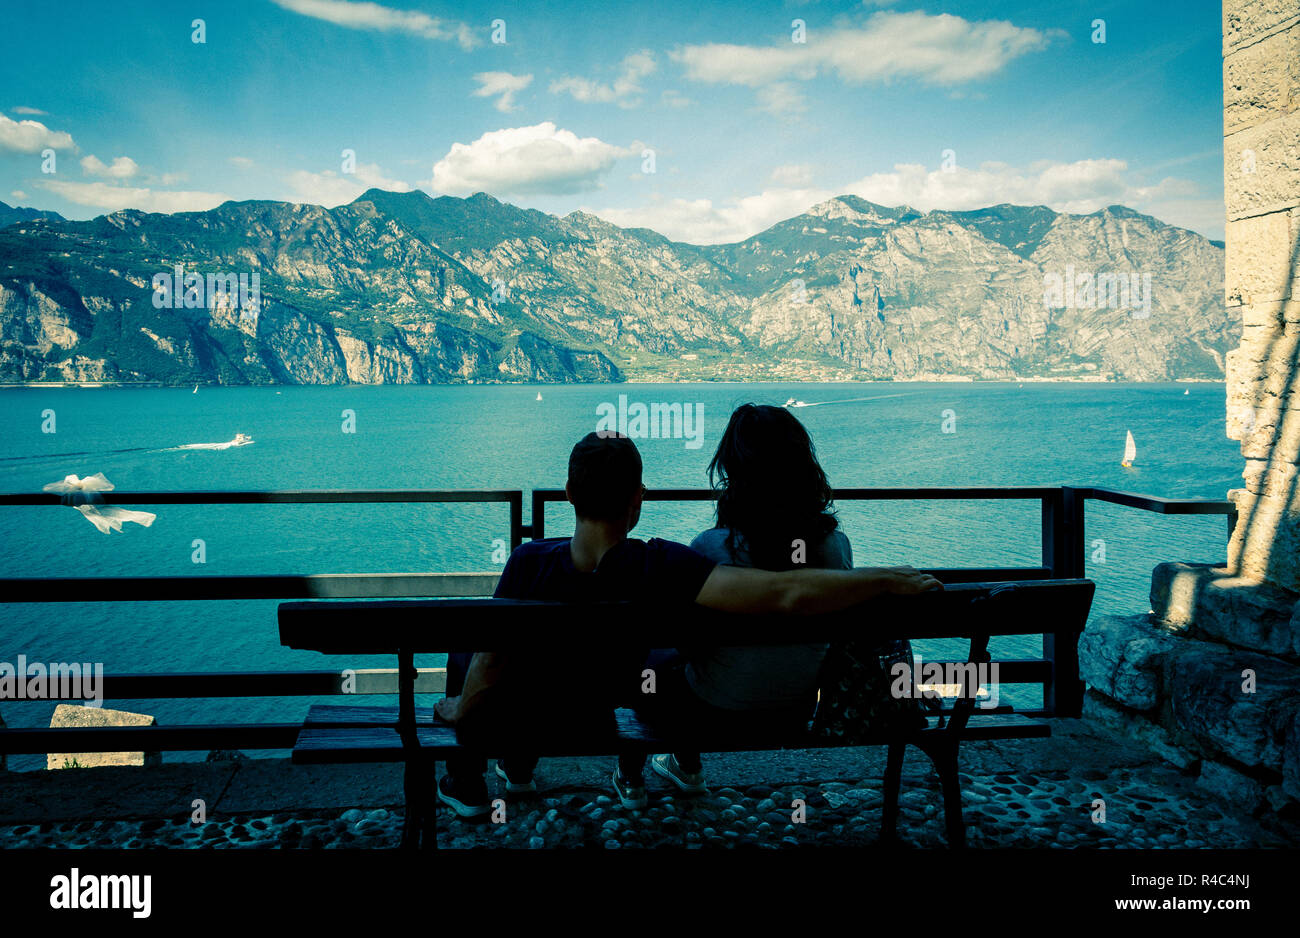 Matura in amore sulle rive del lago di Garda Malcesine sul lago di Garda, Italia. In amore matura sul lungomare. foto nello stile lomography. Foto Stock